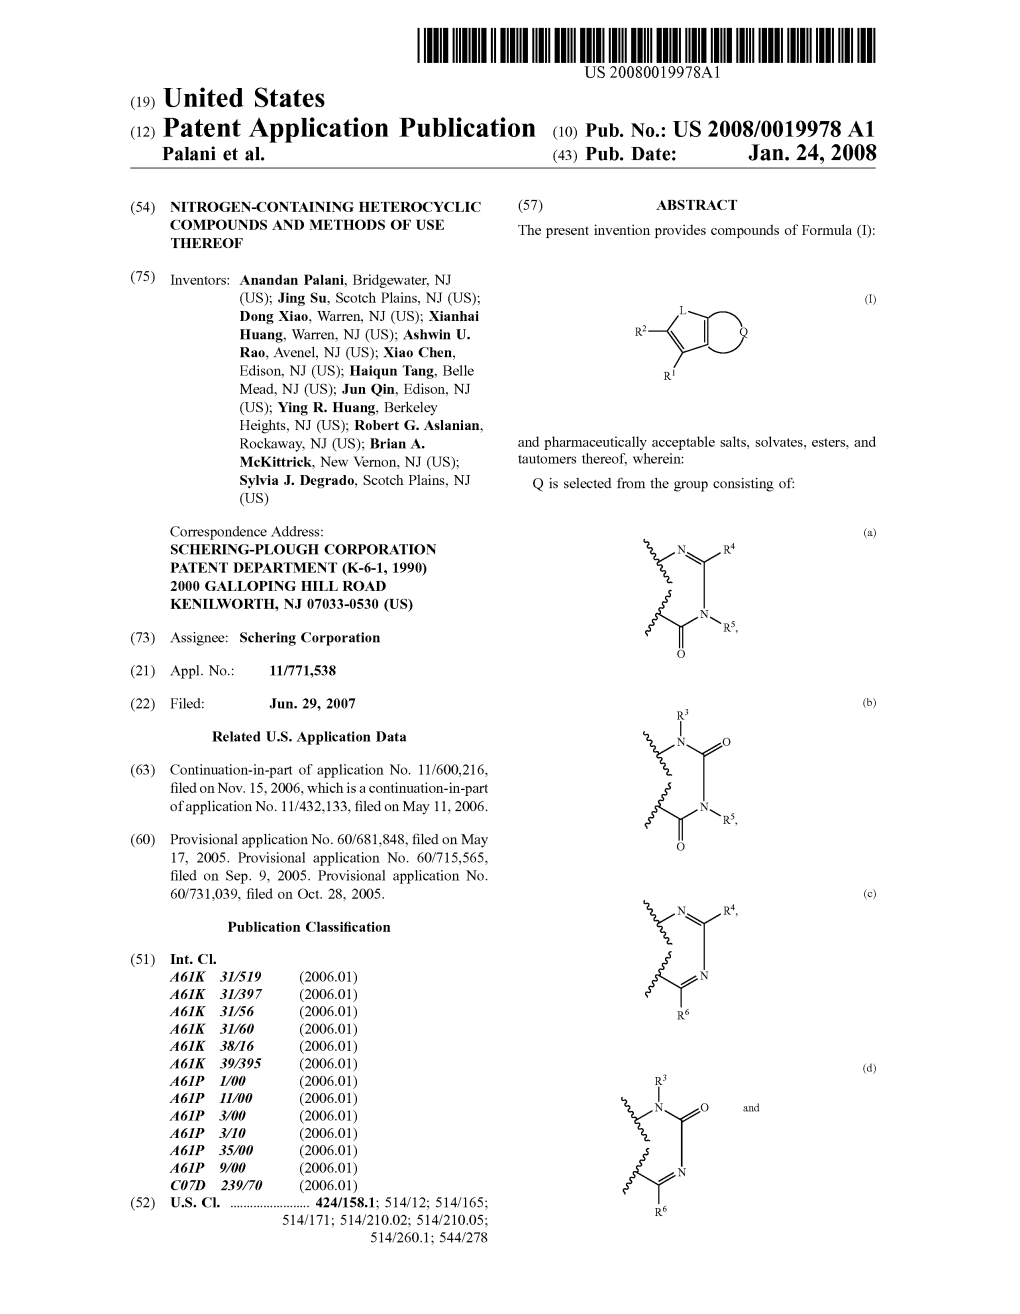 (12) Patent Application Publication (10) Pub. No.: US 2008/0019978A1 Palani Et Al